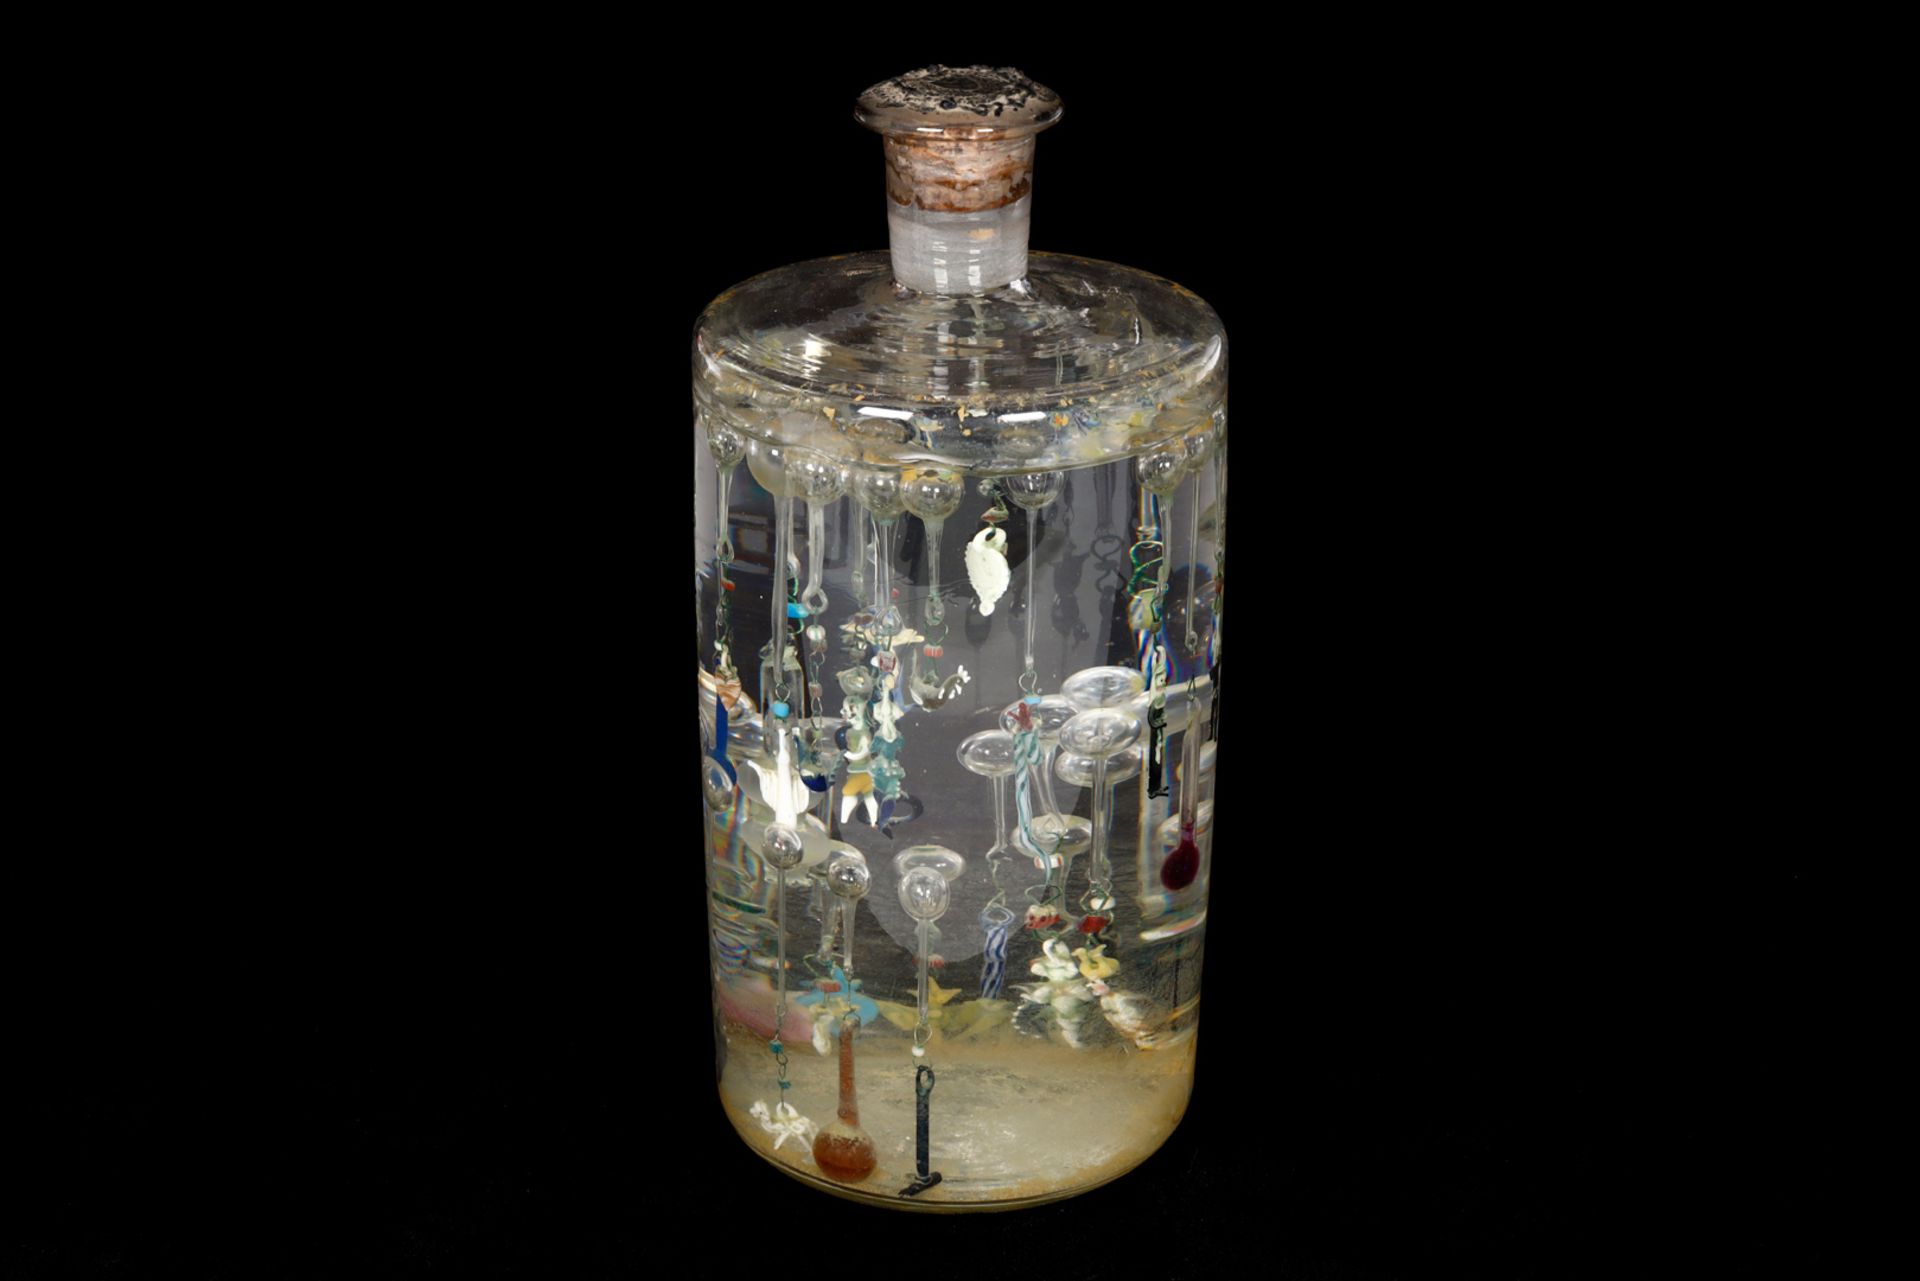 Thermoskop, Glasflasche mit Figuren aus Glas, um 1840, vakuumverschlossen, H 25,5 cm. Kuriosität!